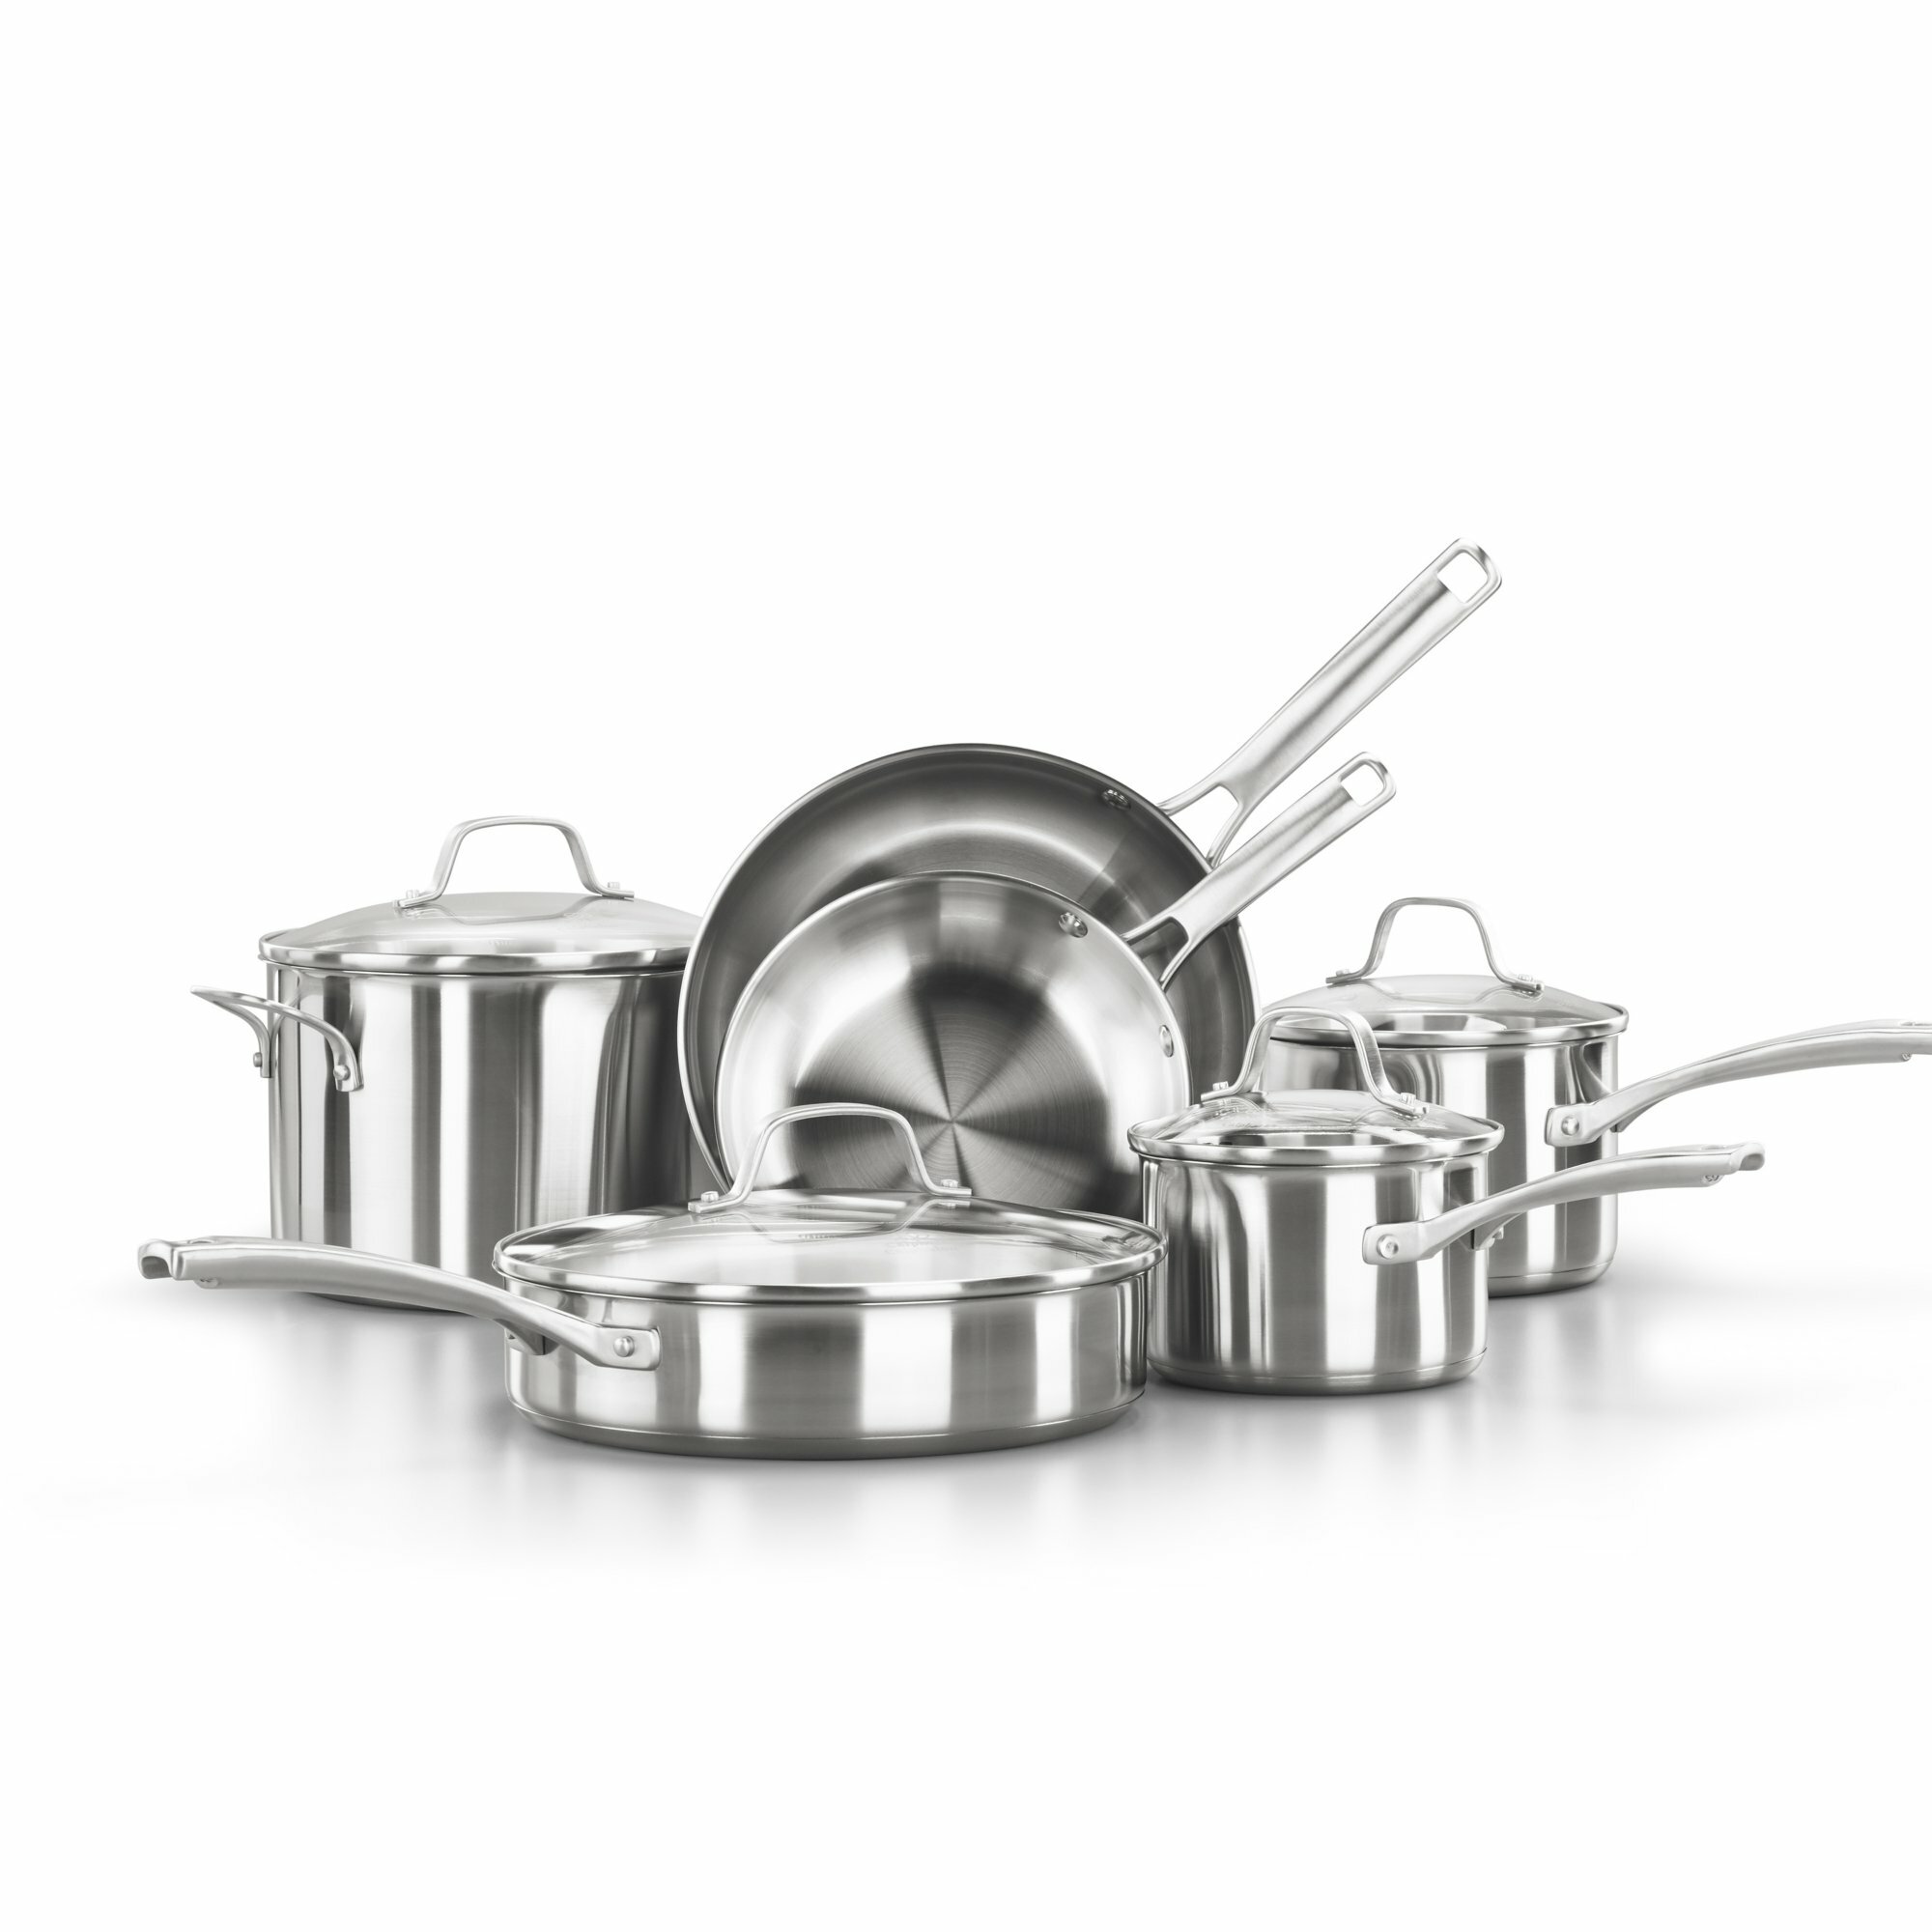 https://assets.wfcdn.com/im/64337859/compr-r85/1179/117981547/calphalon-classic-stainless-steel-10-piece-cookware-set.jpg